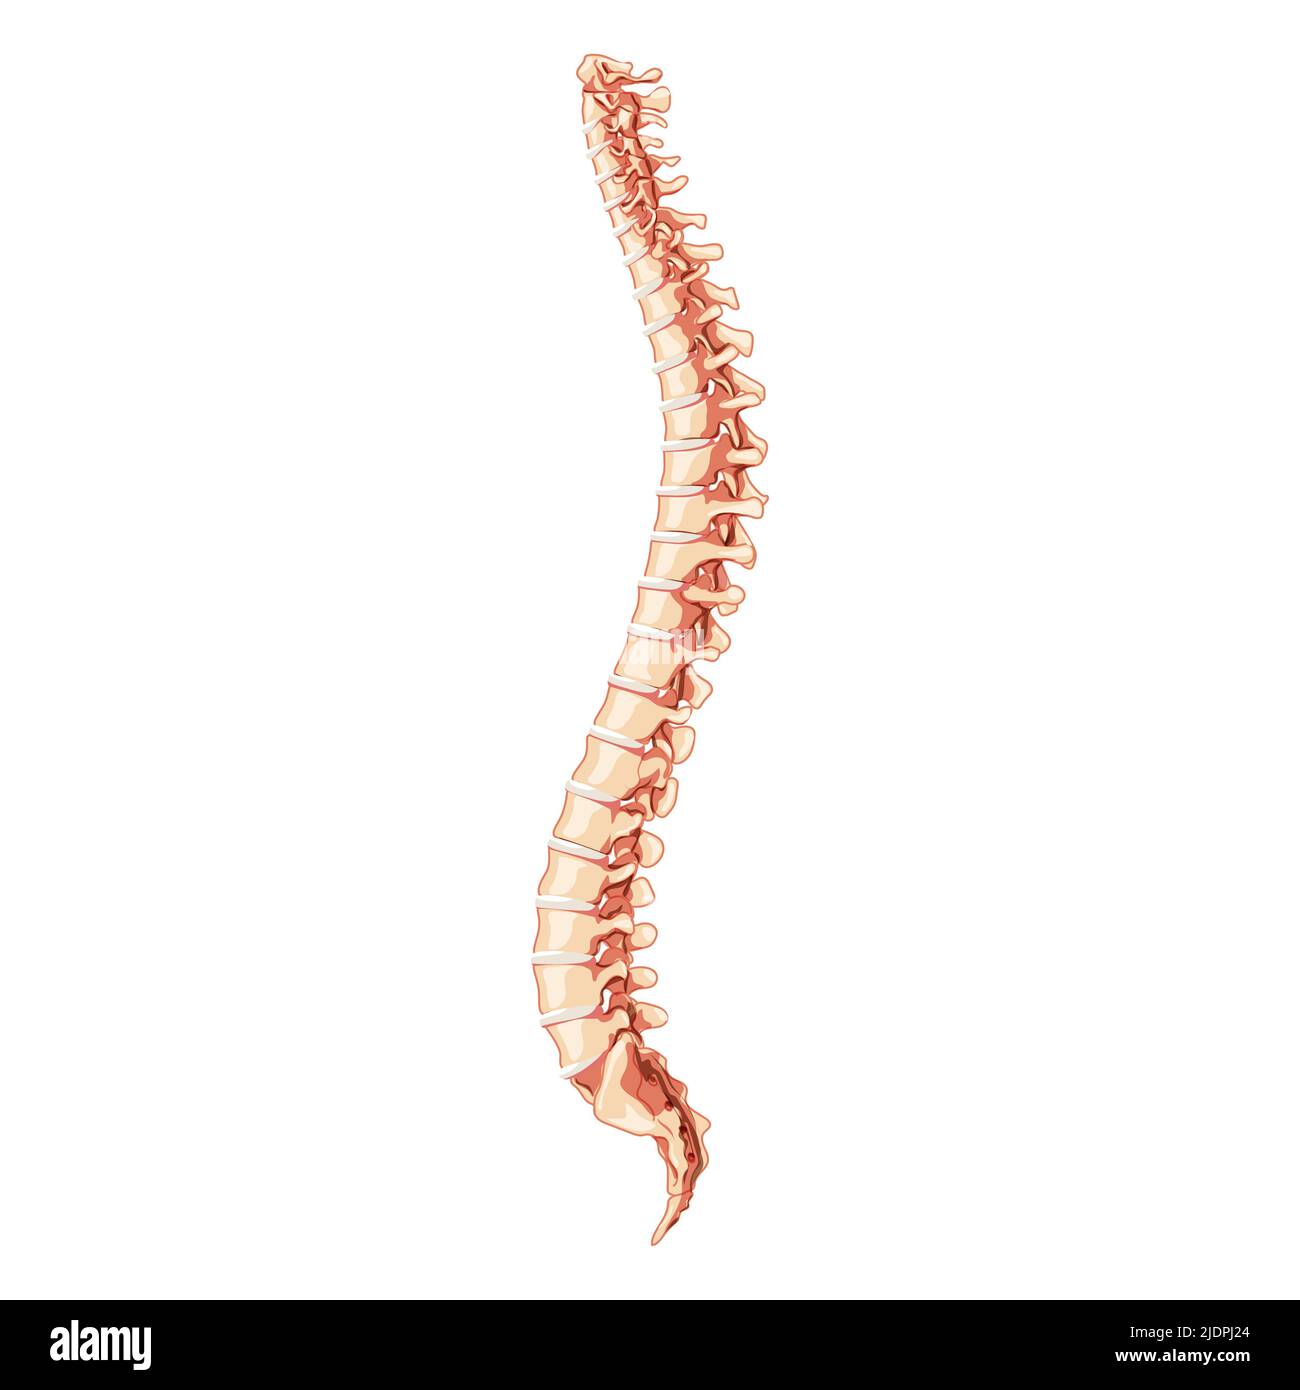 Die menschliche Wirbelsäule Wirbelsäule Anatomie seitlich mit Bandscheibe. Vektor flach 3D realistische Konzeptdarstellung in natürlichen Farben, Wirbelsäule isoliert auf weißem Hintergrund. Stock Vektor